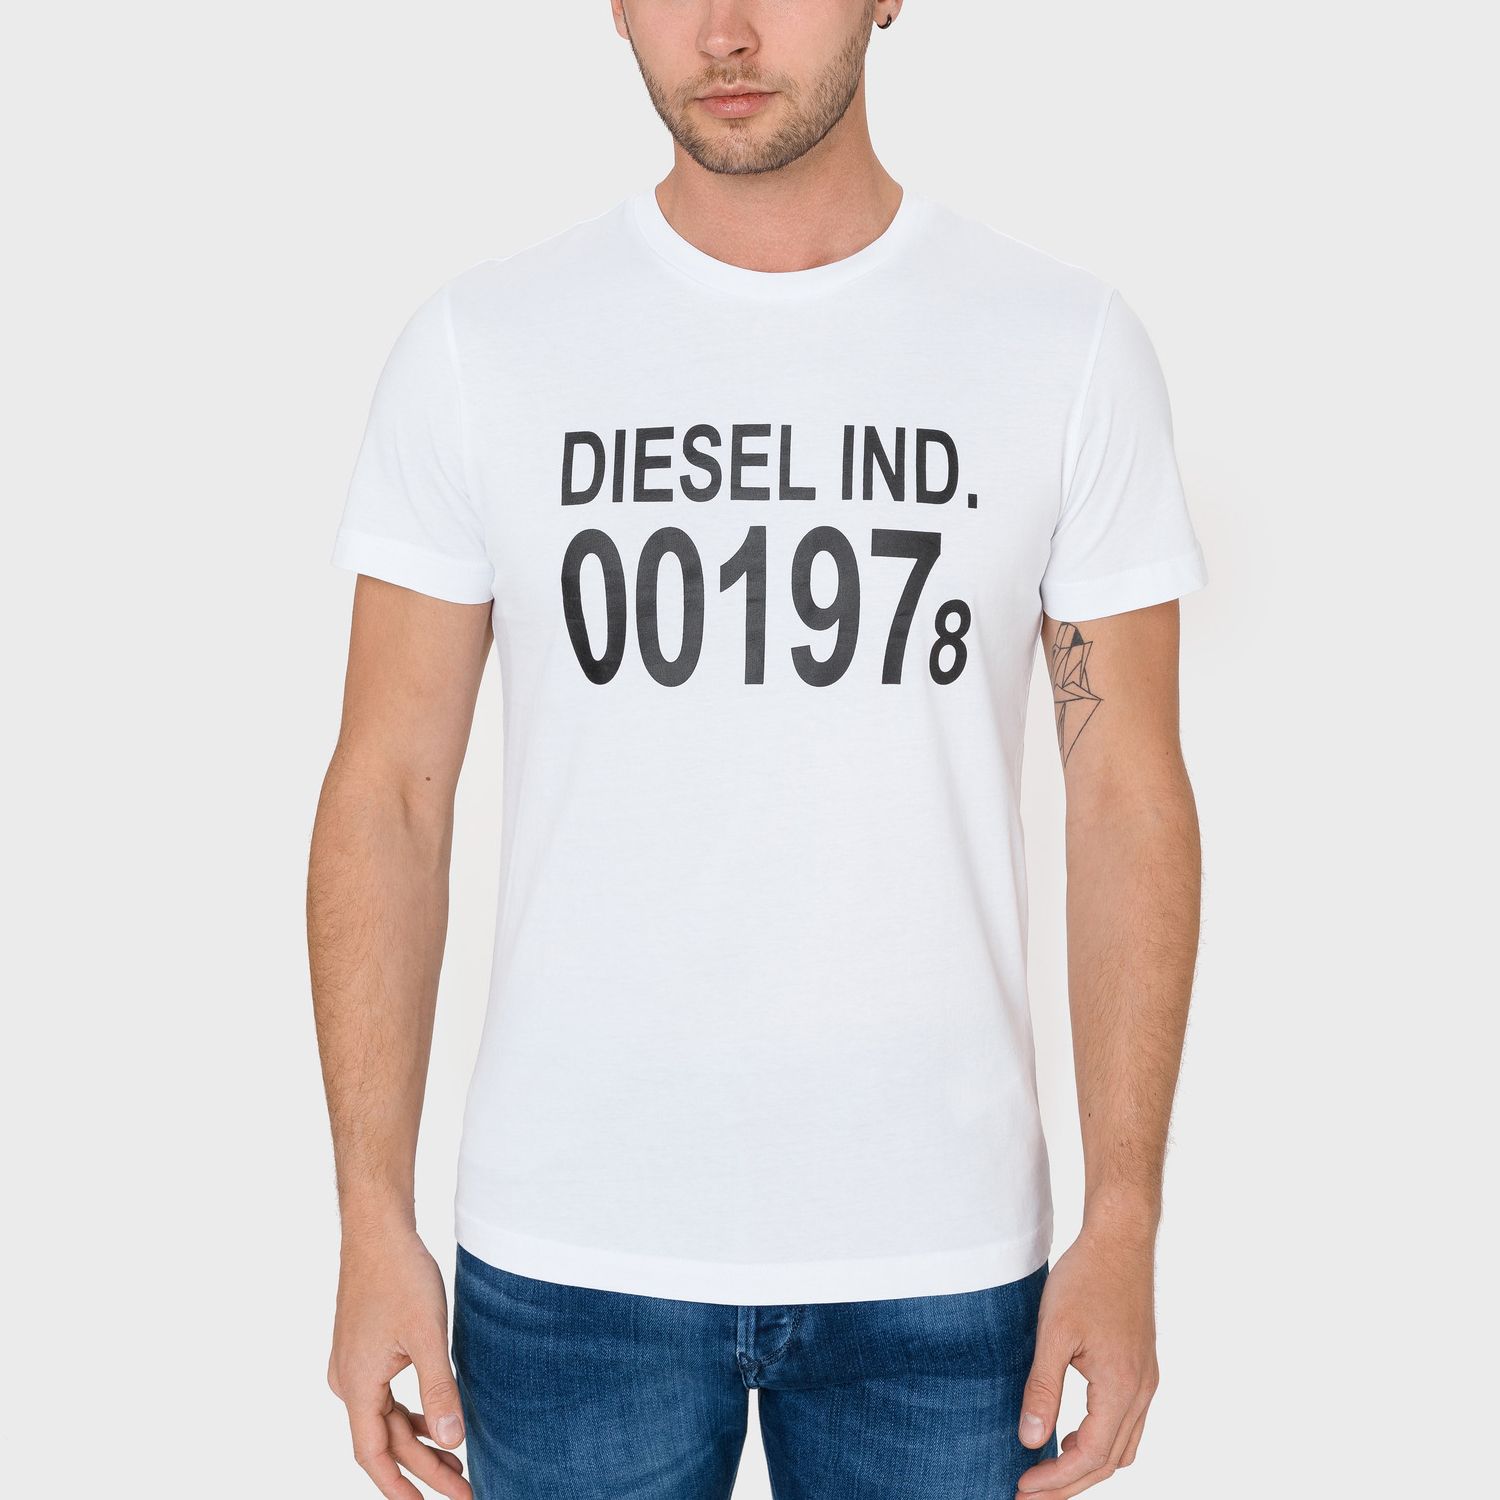 Футболка Diesel T-Diego-001978 T-shirt